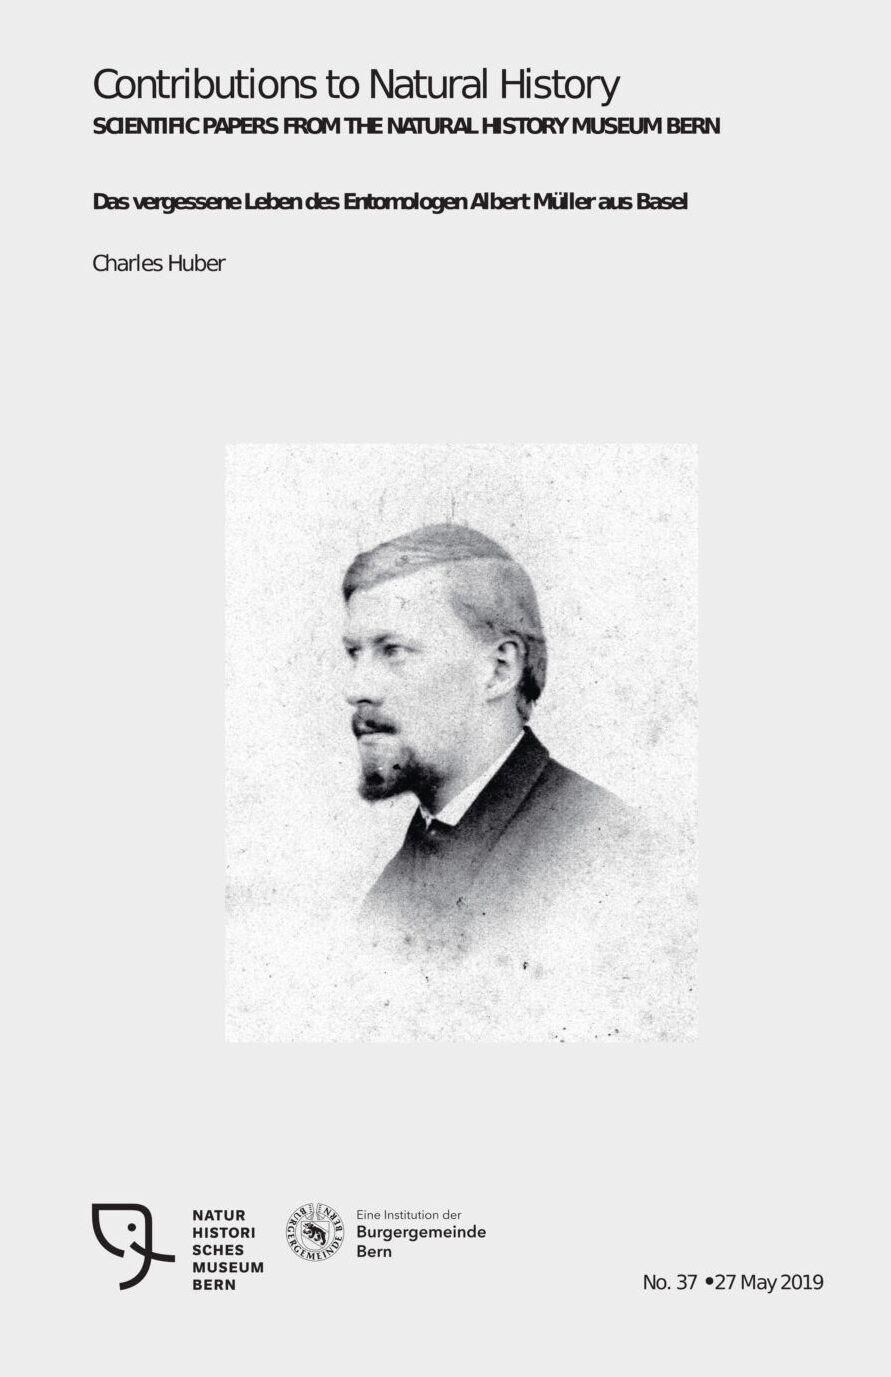 Albert Müller, Entomologe, Naturhistorischs Museum Bern, Publikation von Chrles Huber. CC-BY-SA 4.0 charles Huber, Oberdiessbach, Schweiz